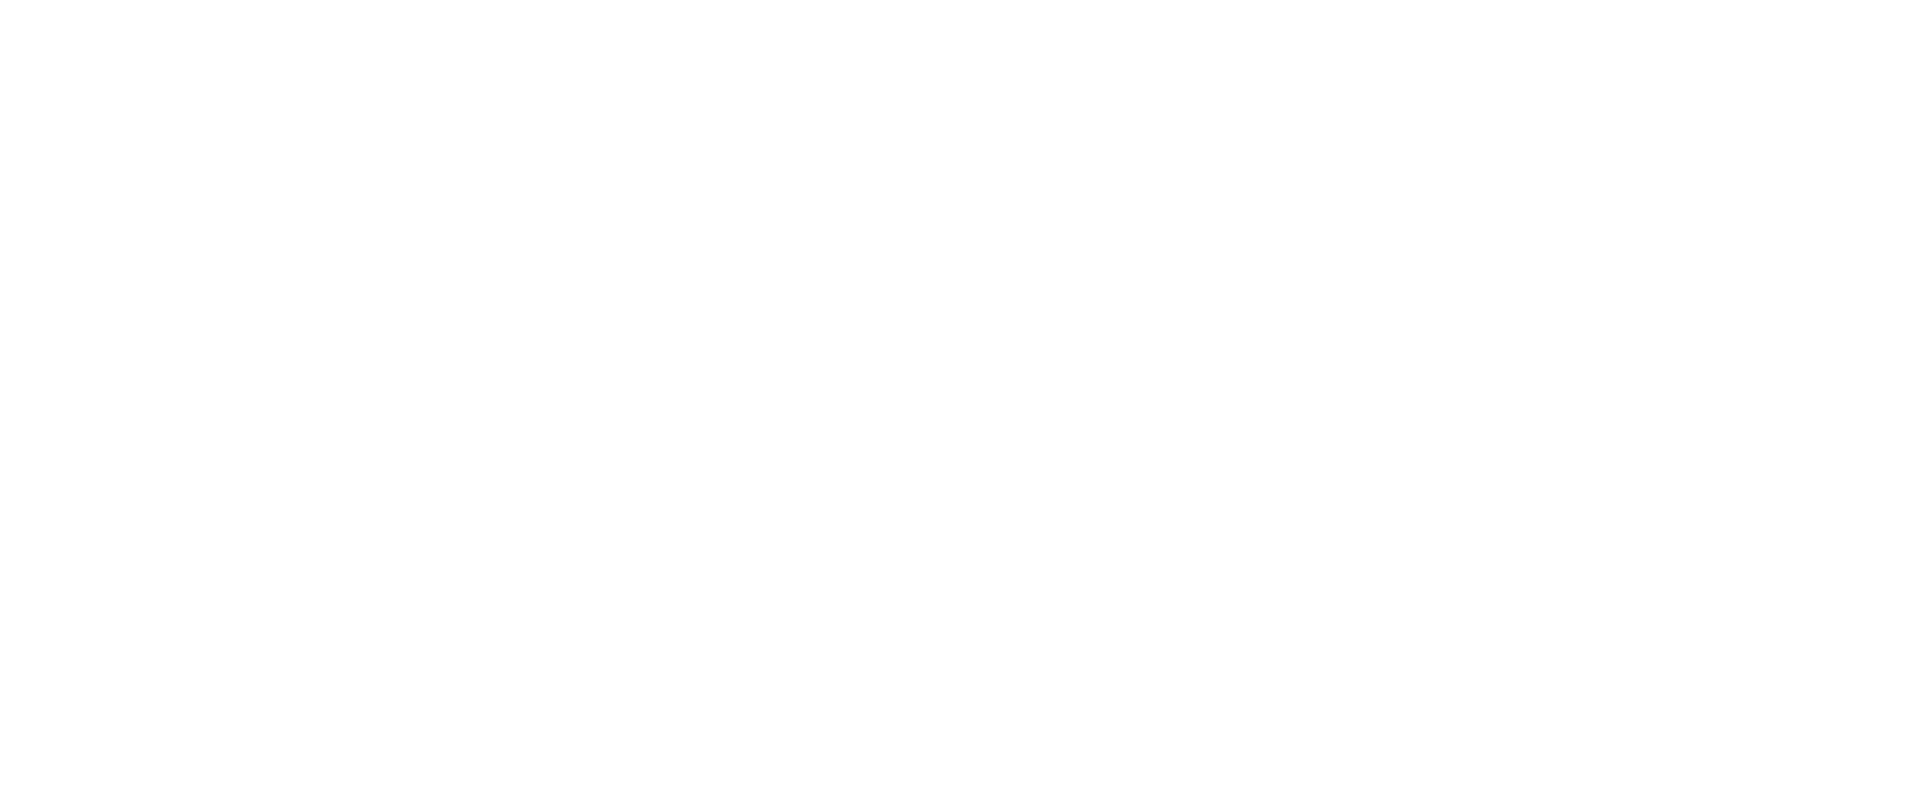 Verus is Latin For True